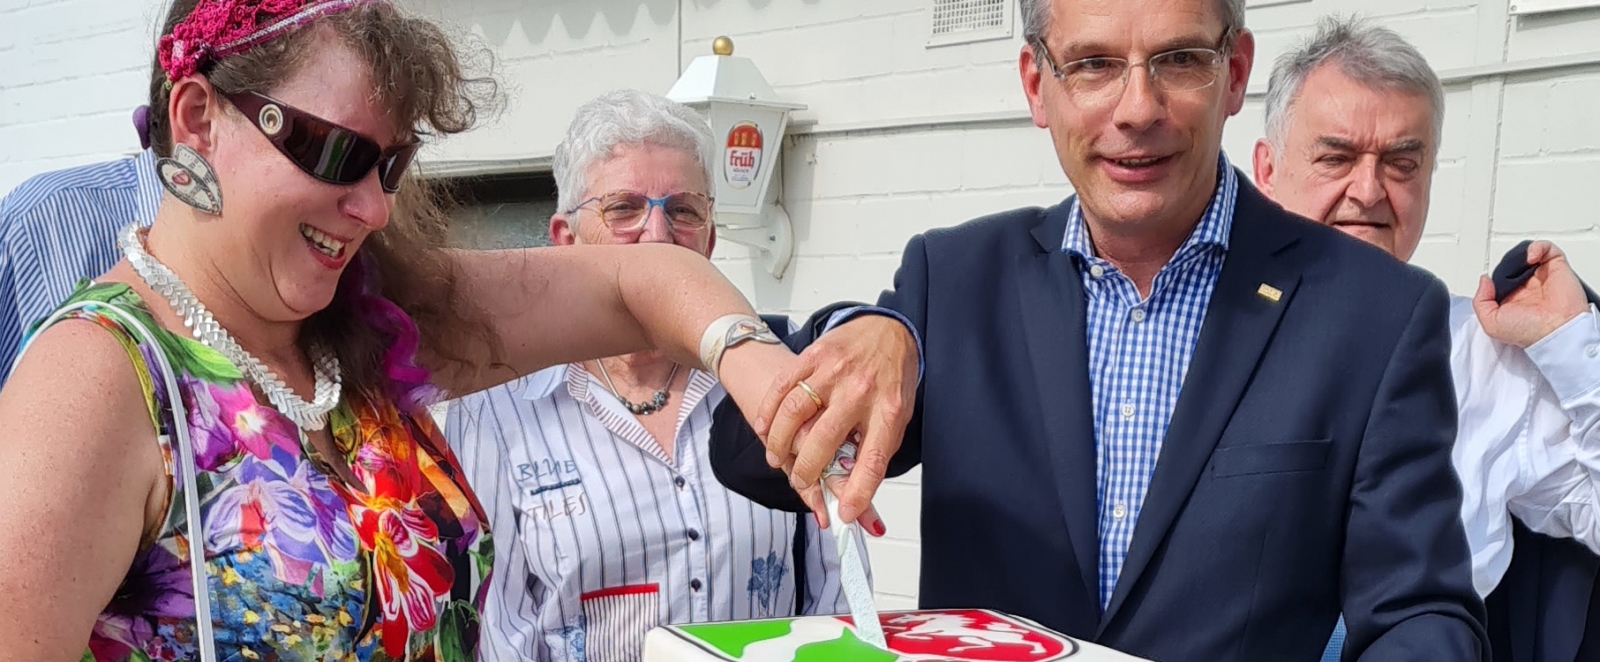 Staatssekretärin Milz schneidet mit einem Herrn den Sportland-NRW-Kuchen an.